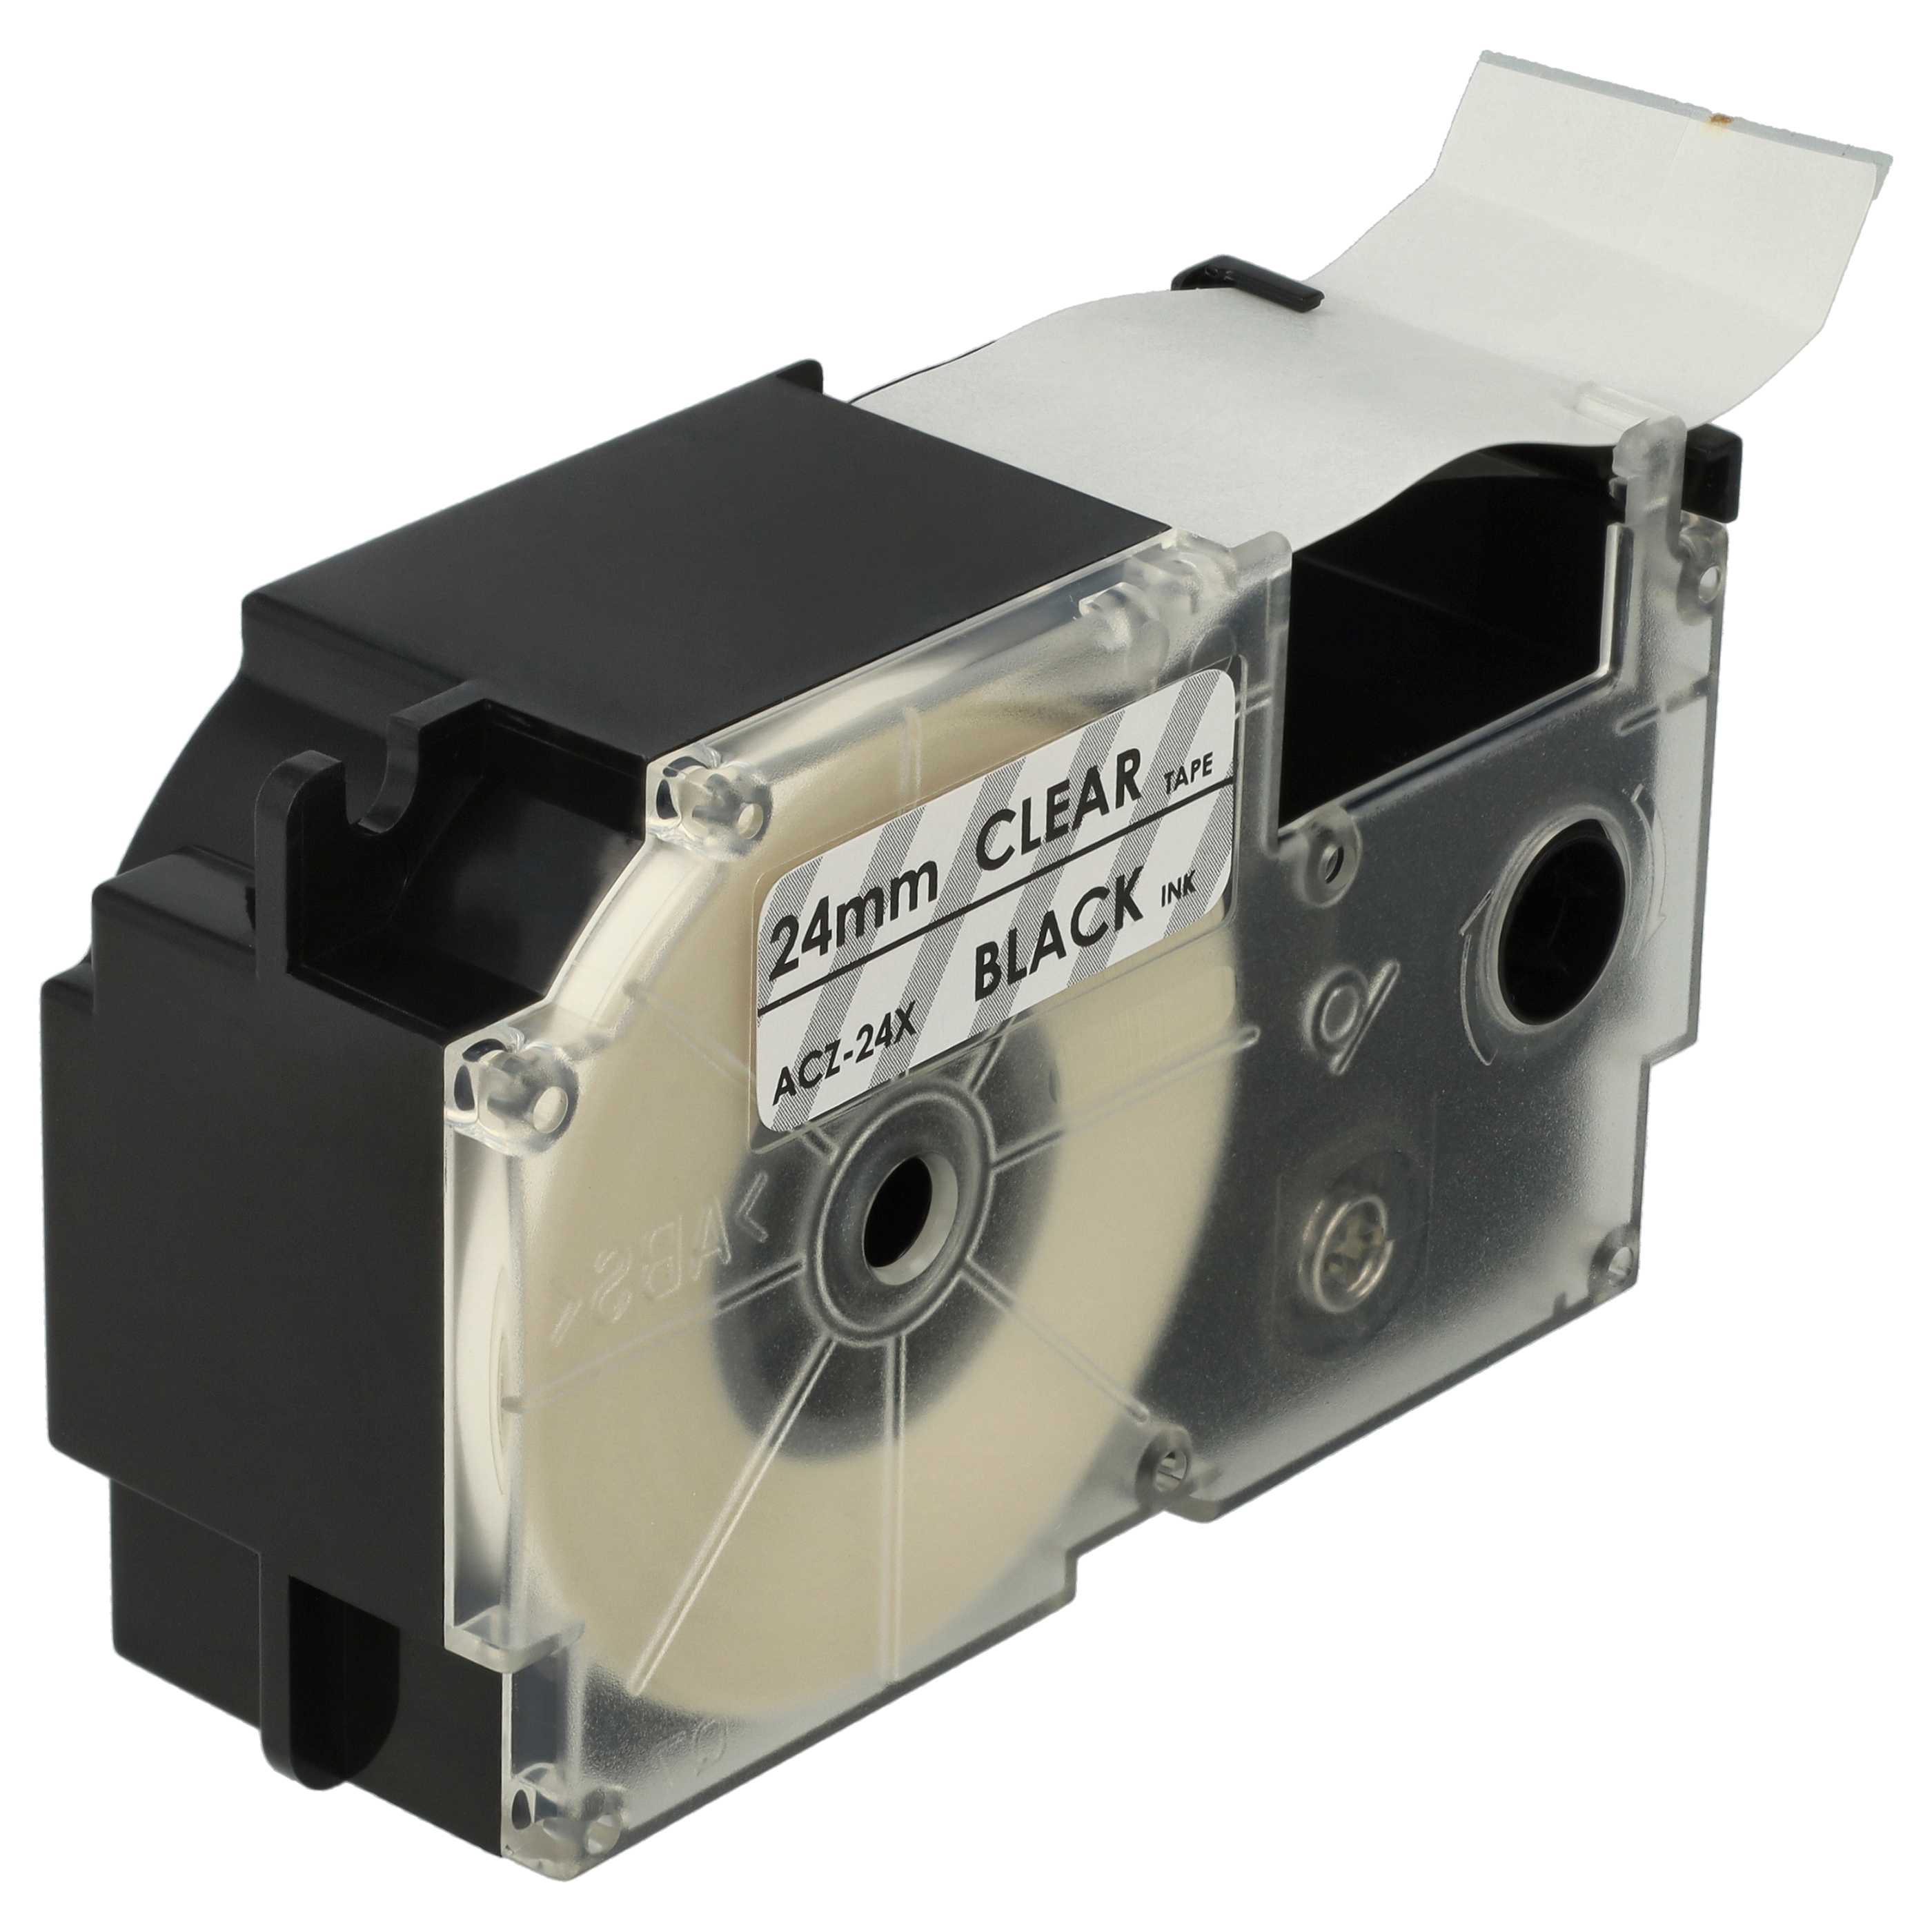 Cassette à ruban remplace Casio XR-24X - 24mm lettrage Noir ruban Transparent